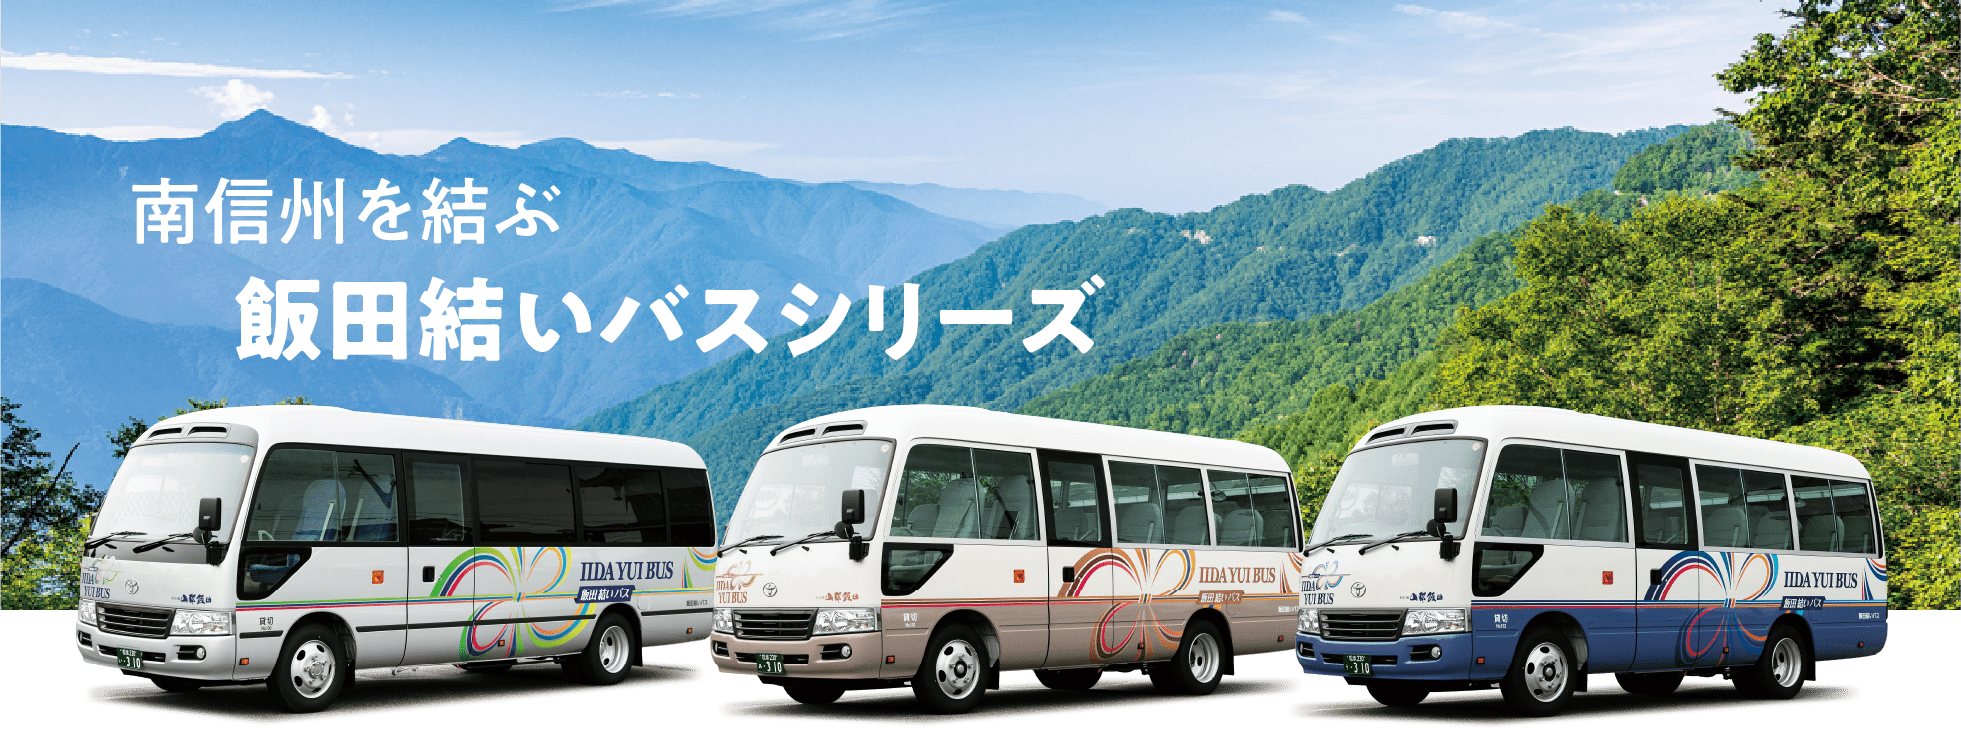 南信州を結ぶ飯田結いバスシリーズ